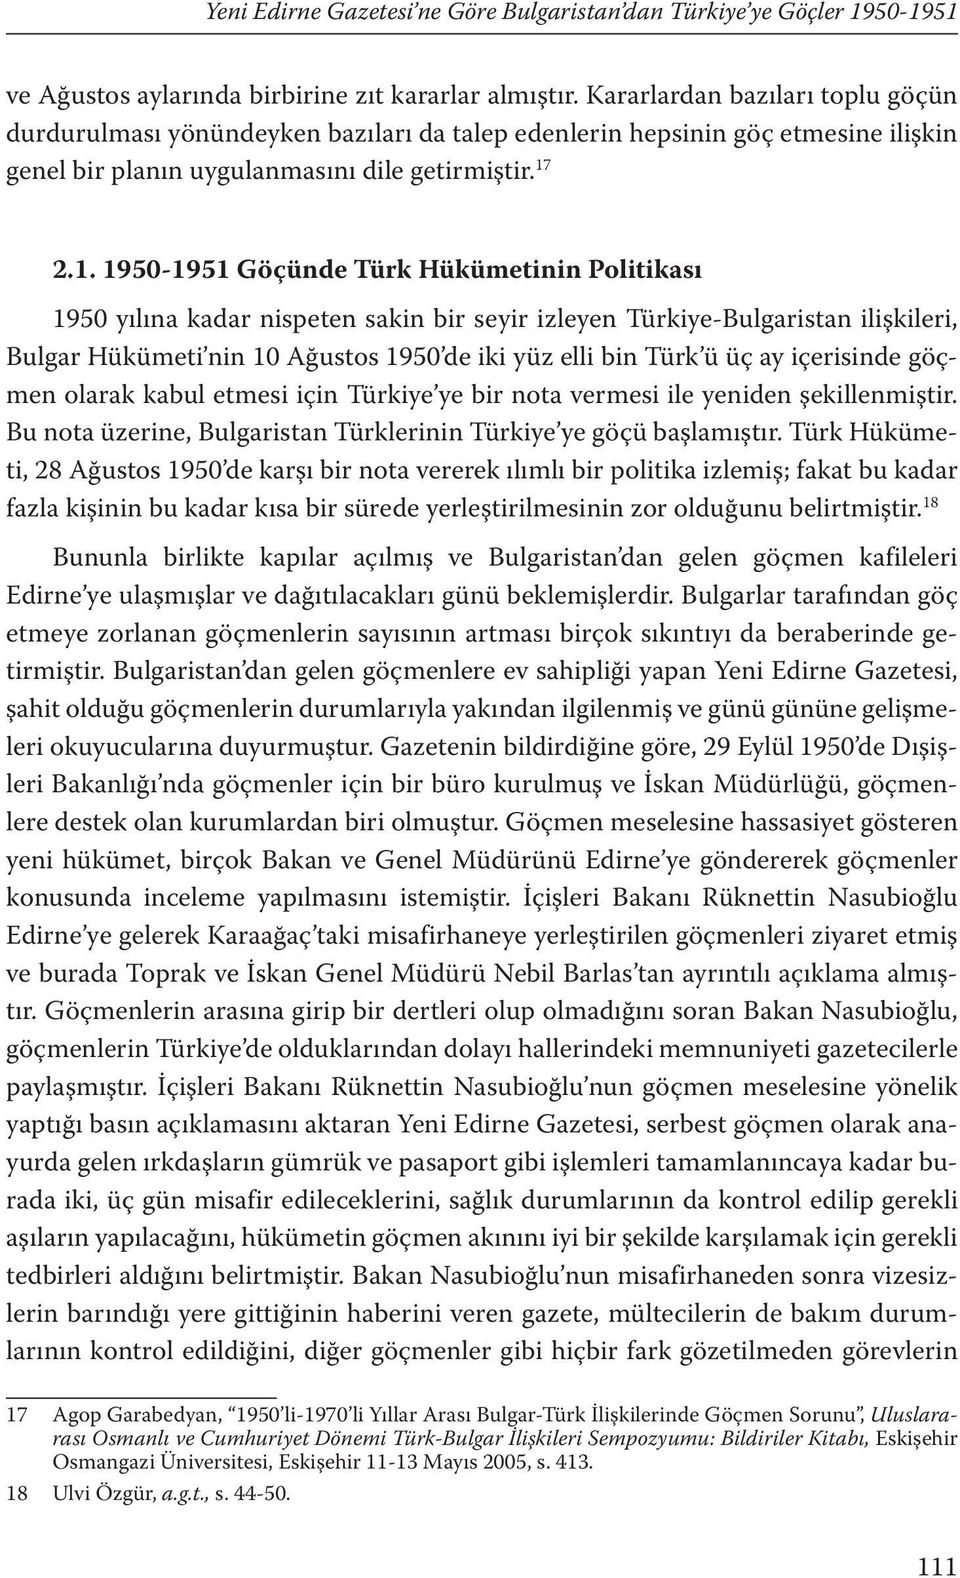 2.1. 1950-1951 Göçünde Türk Hükümetinin Politikası 1950 yılına kadar nispeten sakin bir seyir izleyen Türkiye-Bulgaristan ilişkileri, Bulgar Hükümeti nin 10 Ağustos 1950 de iki yüz elli bin Türk ü üç